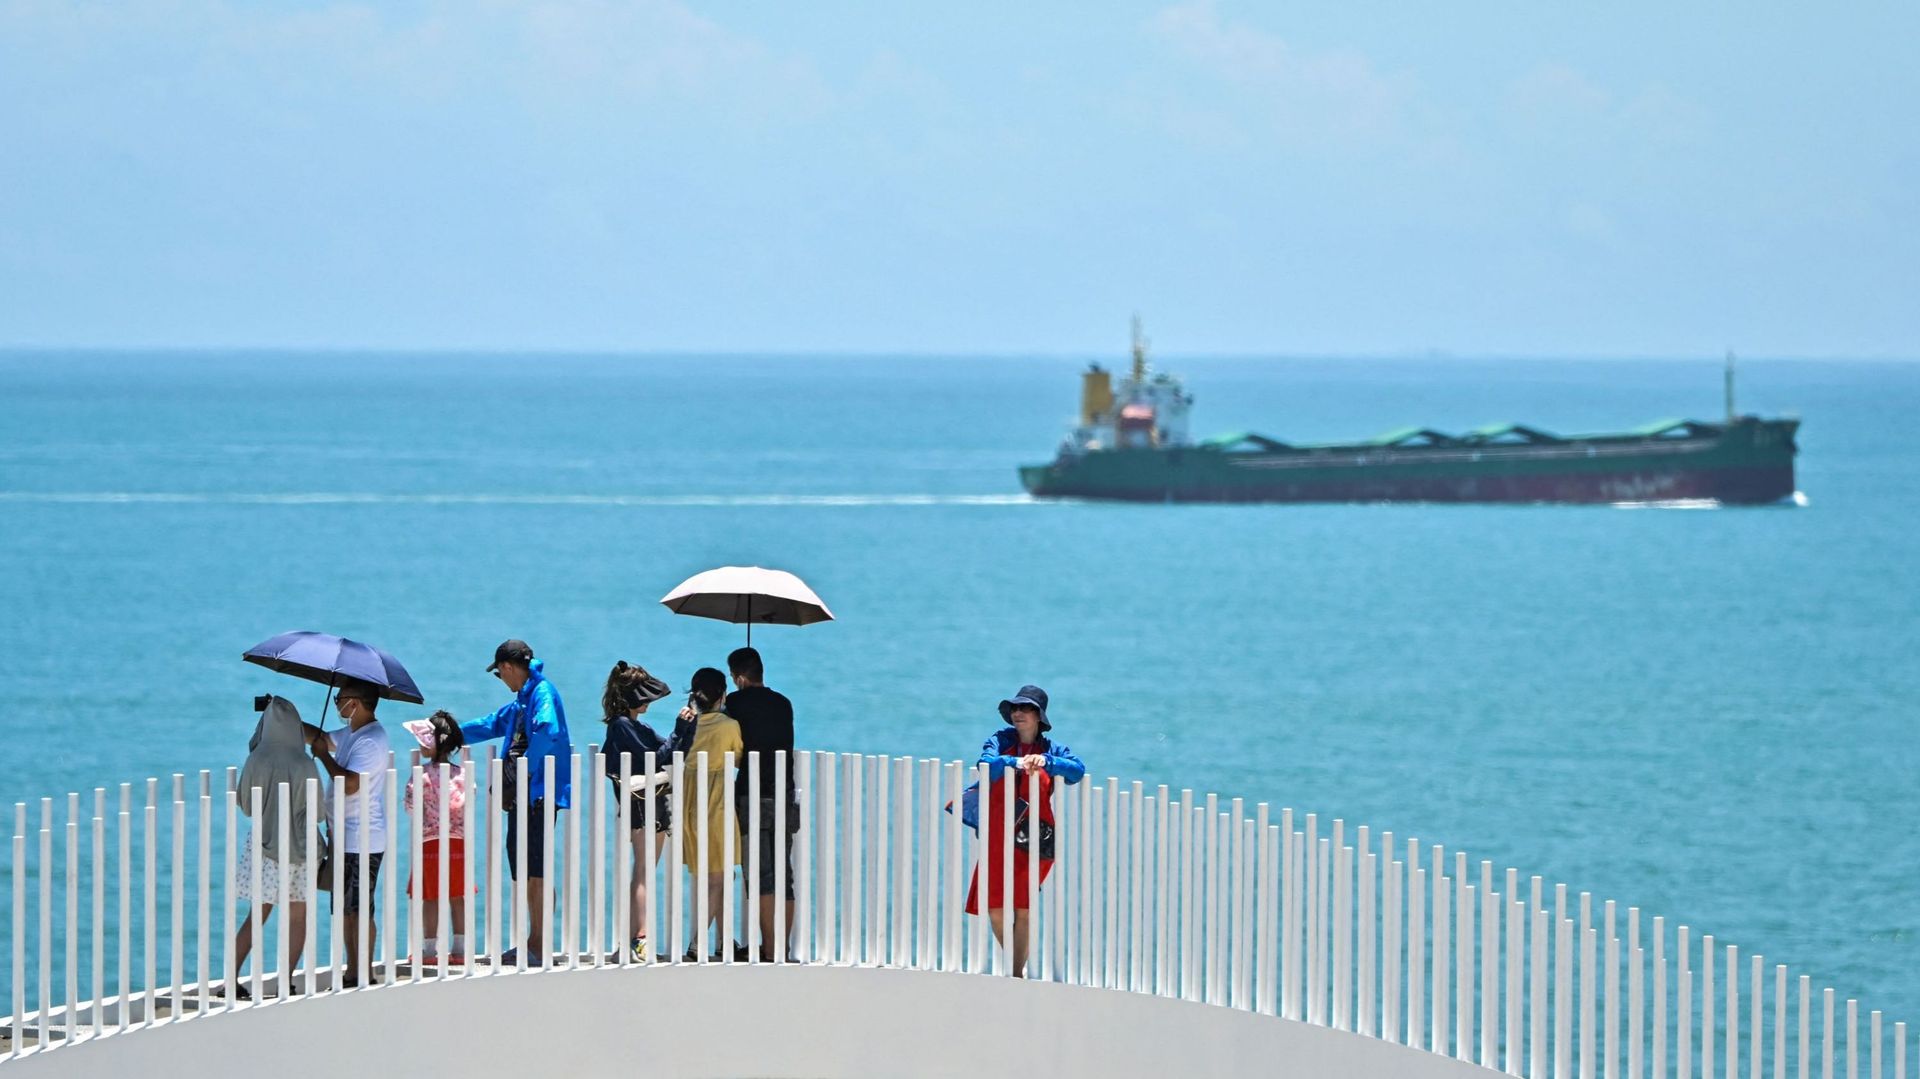 Des touristes visitent une zone pittoresque sur l’île de Pingtan, l’un des points de la Chine continentale les plus proches de Taïwan, dans la province de Fujian, Chine le 5 août 2022 (illustration)